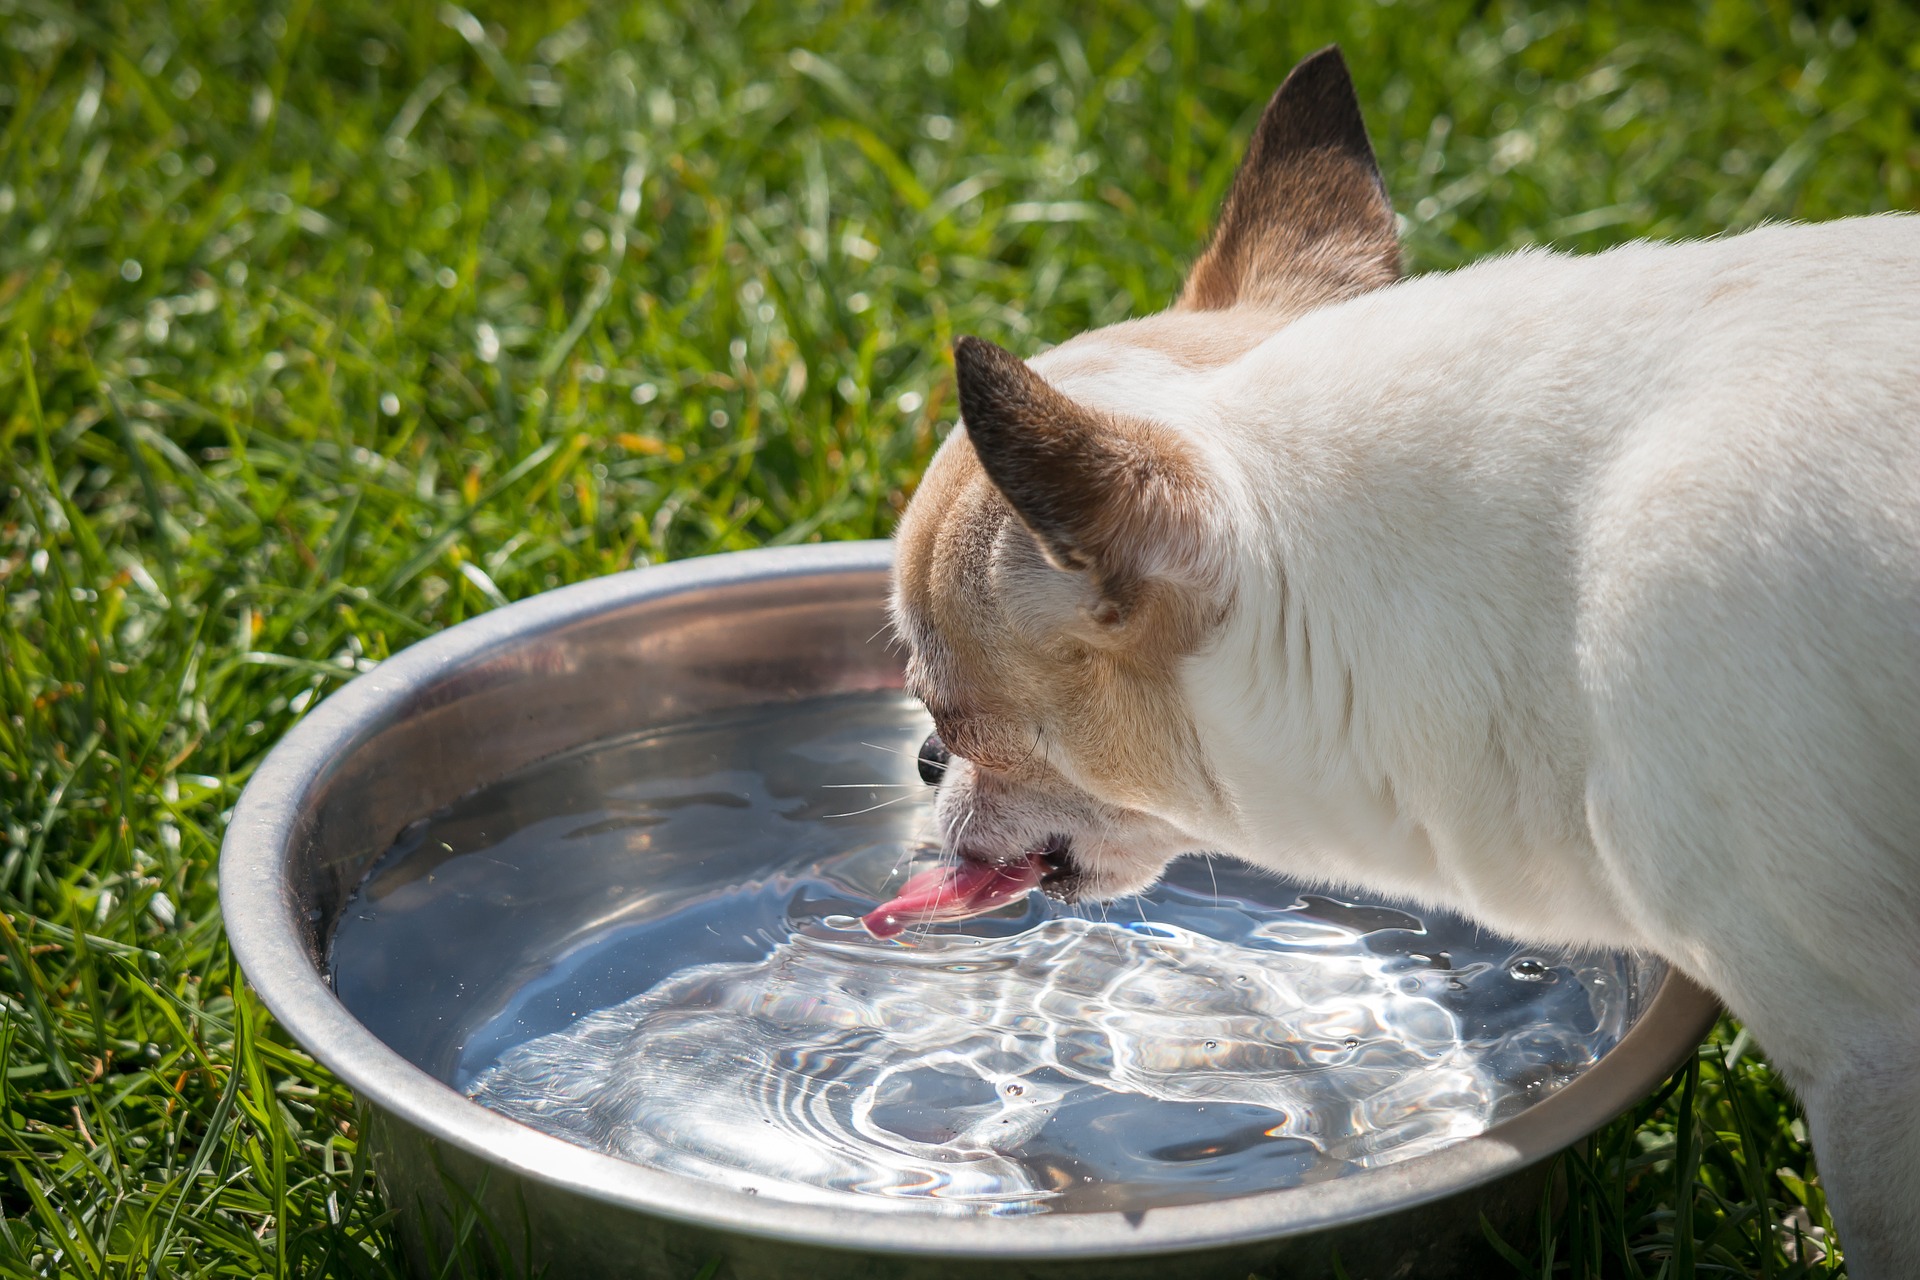 Água fresca evita a desidratação. Foto: Pixabay